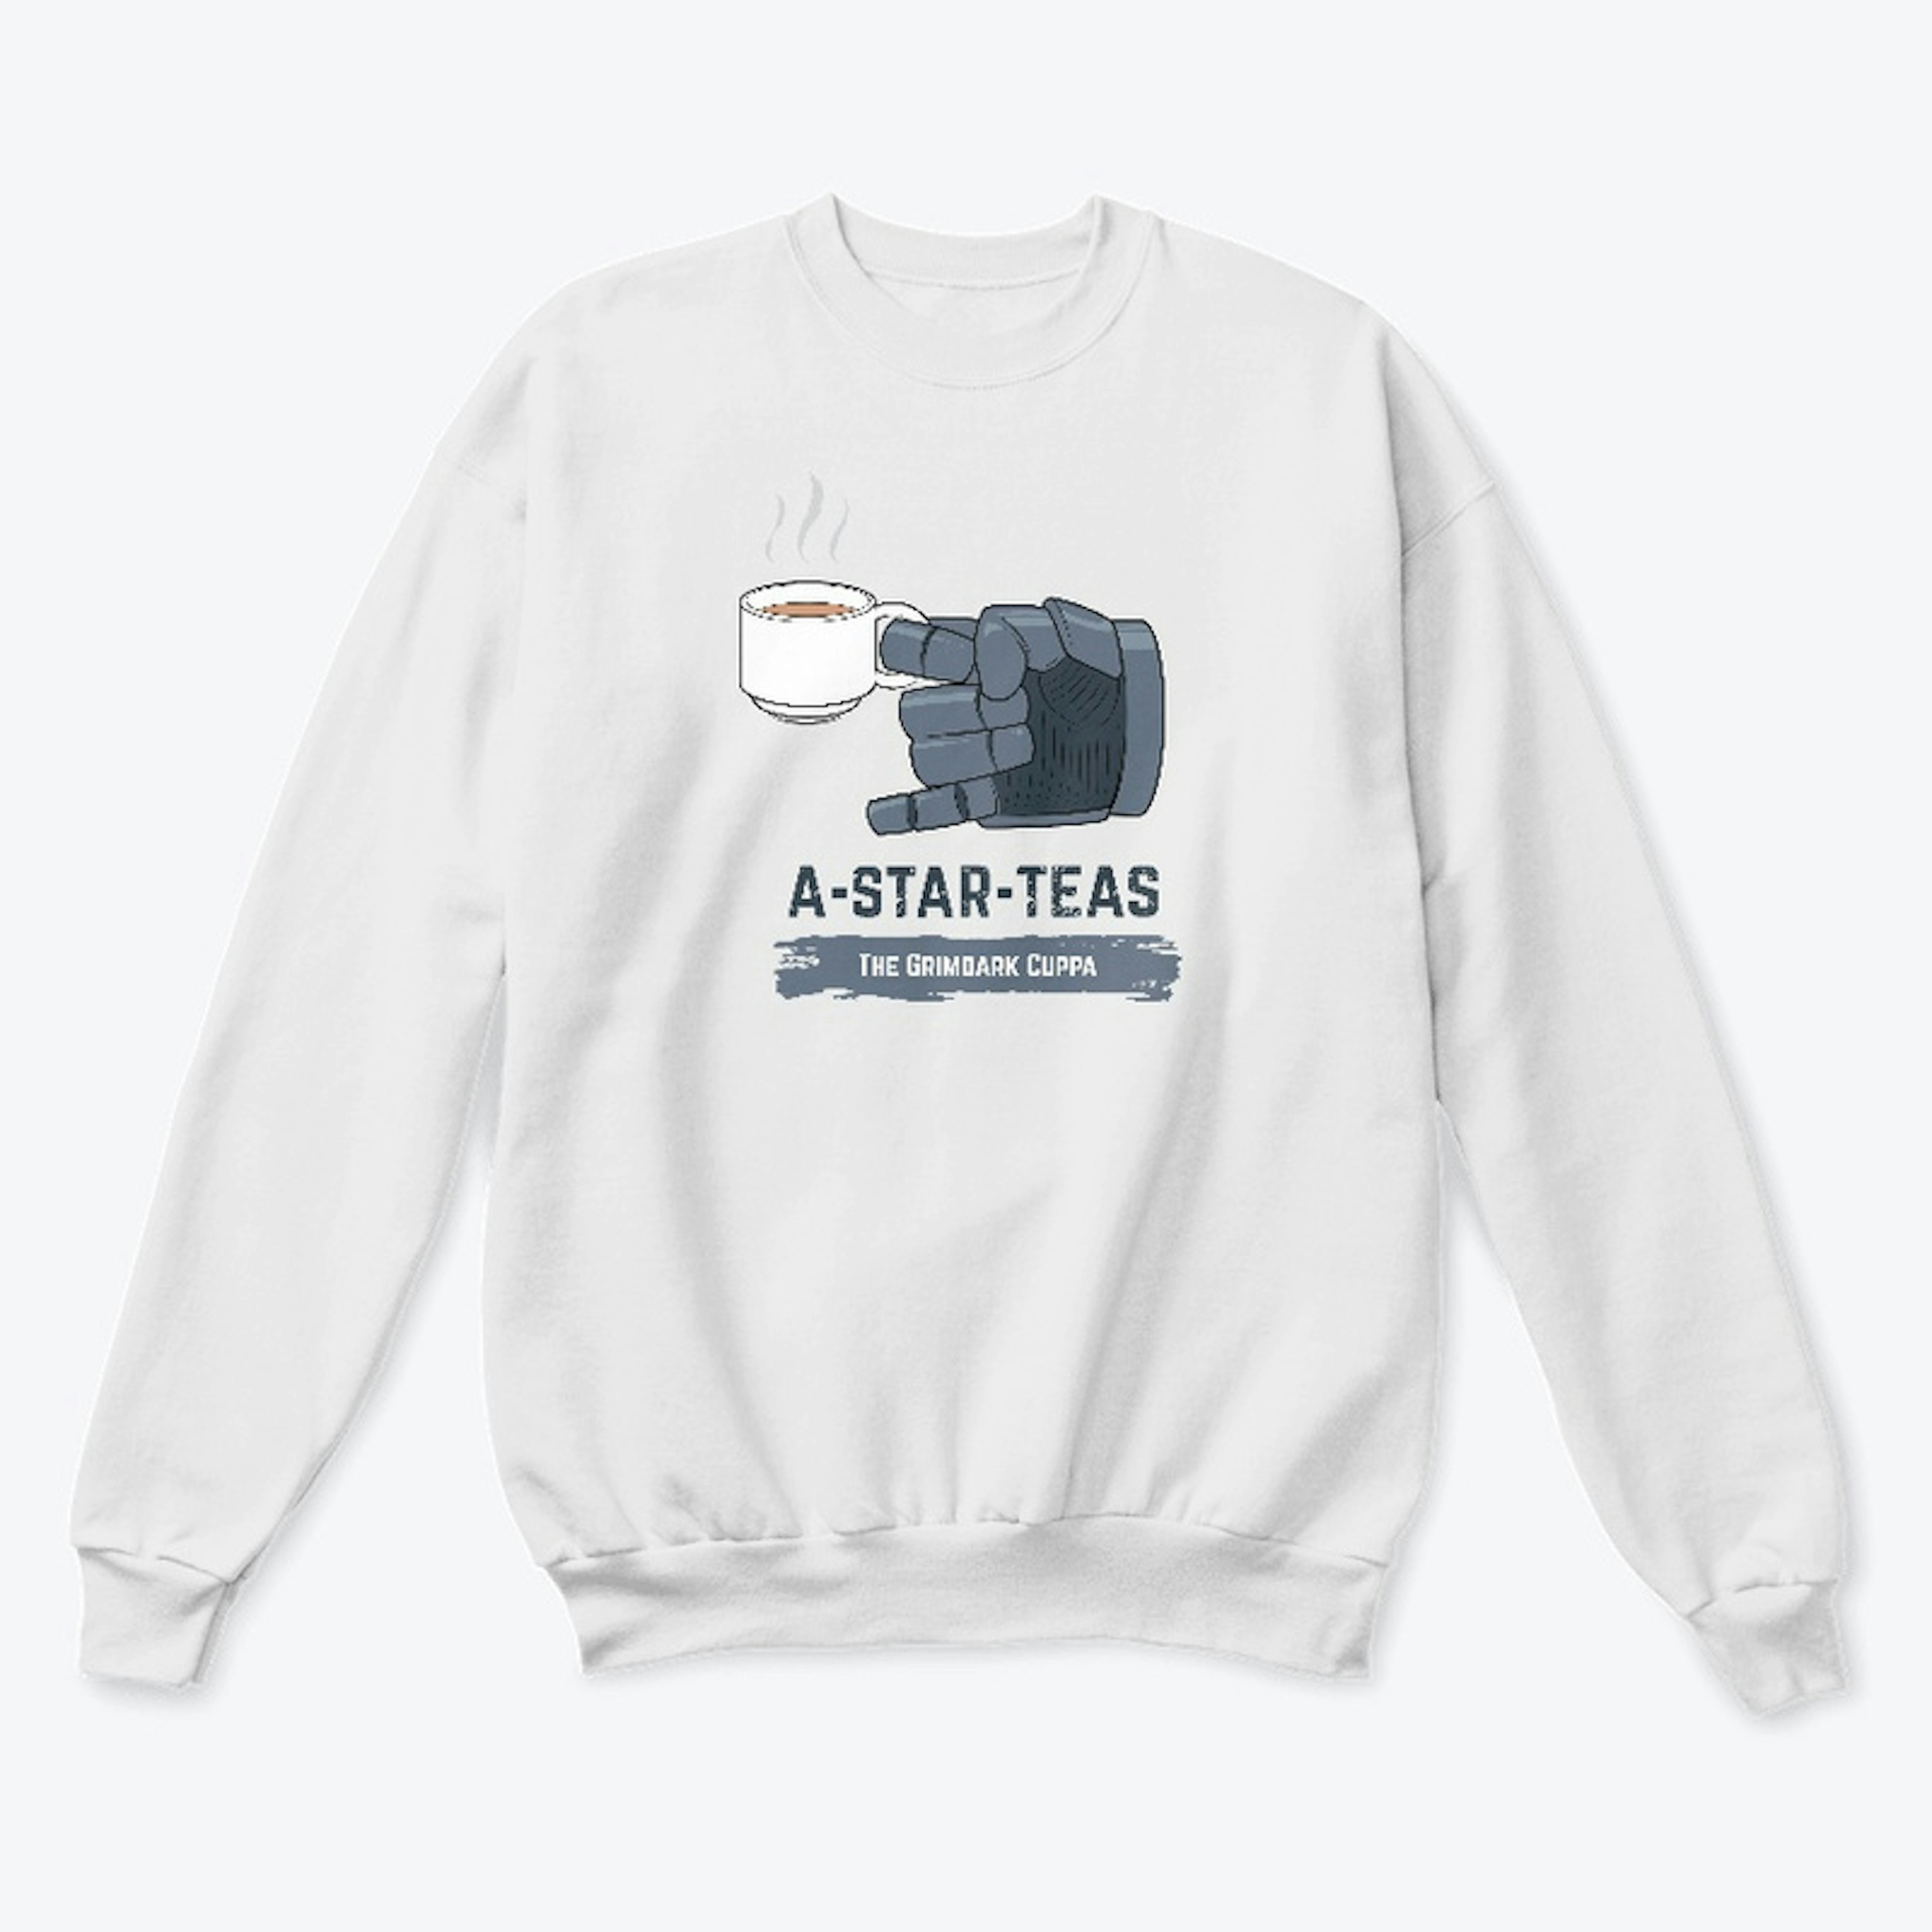 A-Star-Teas